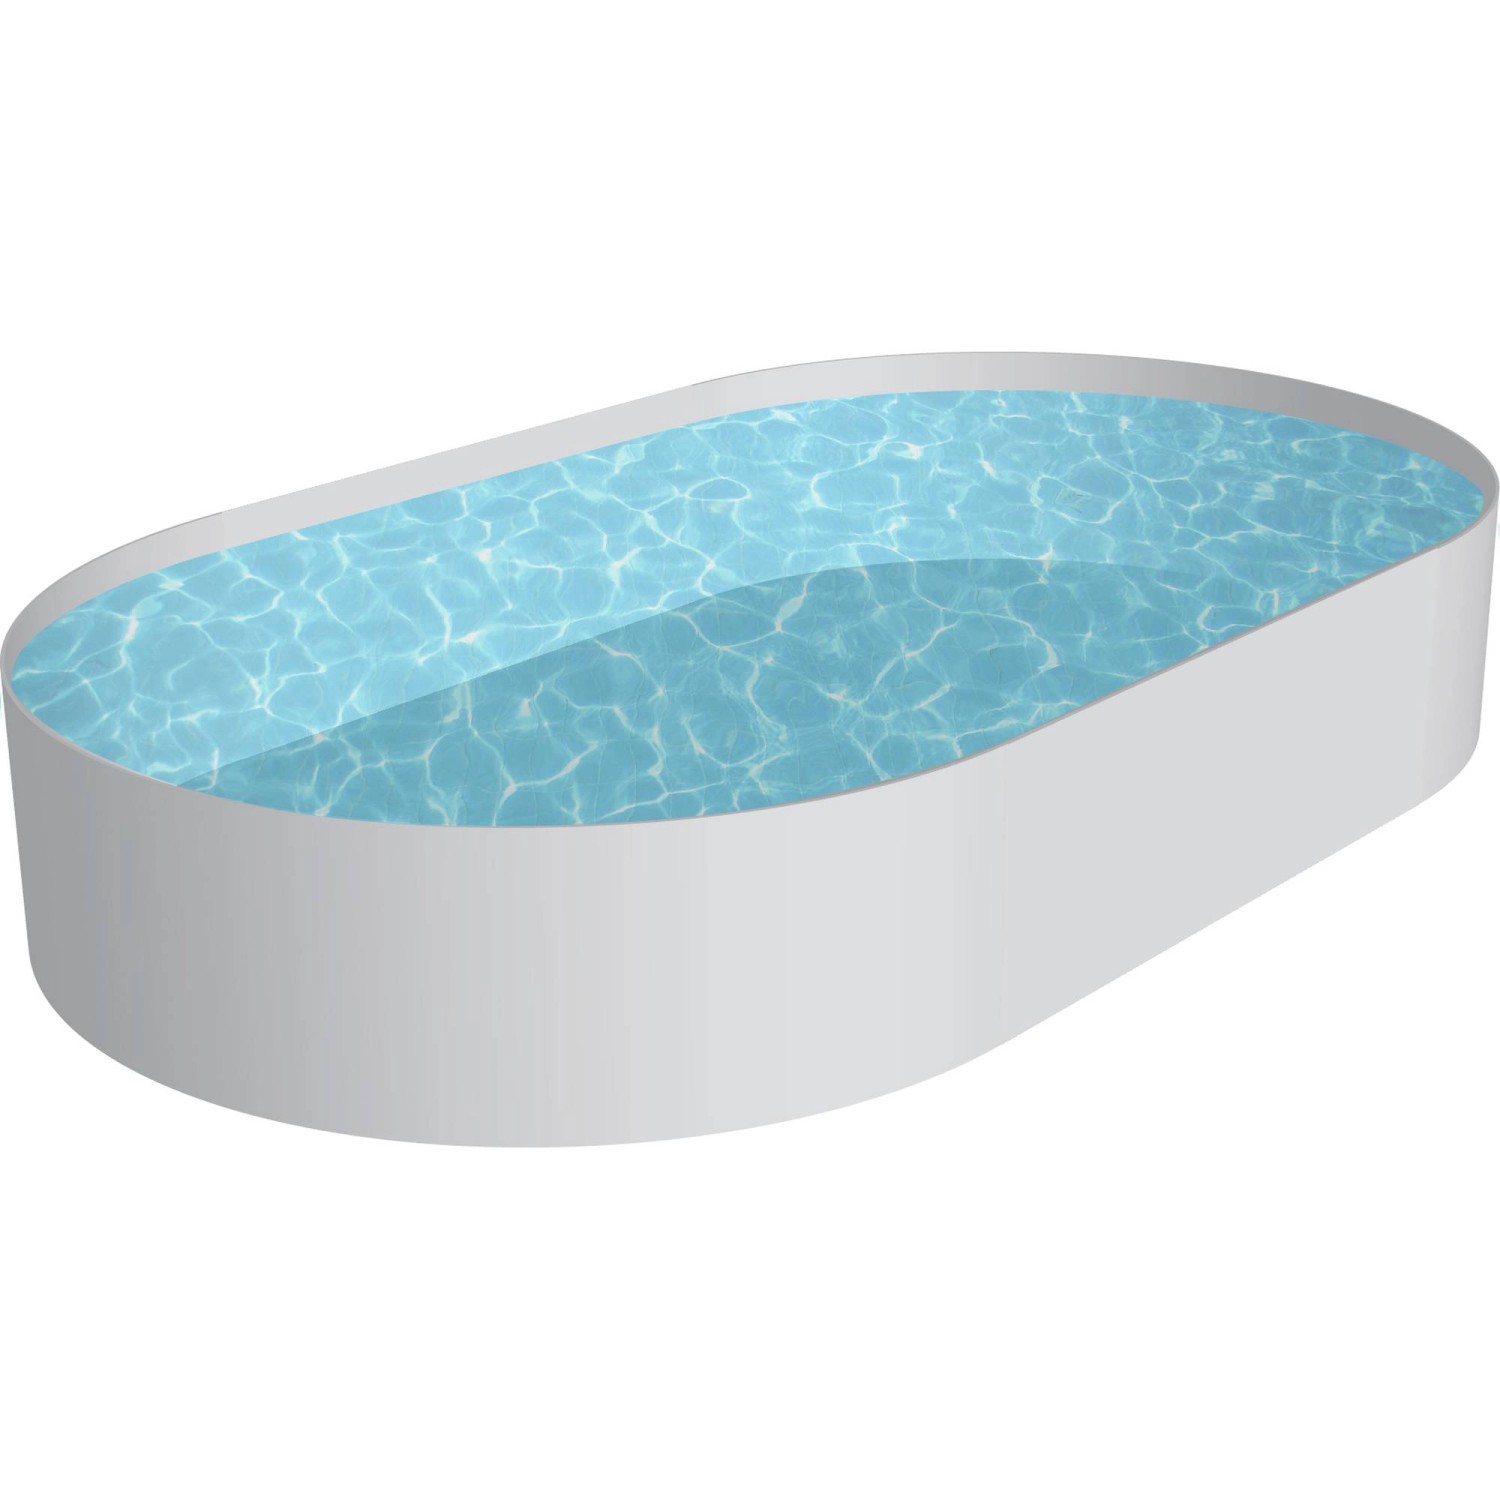 Summer Fun Stahlwand Pool Fidschi Ovalform 600 cm x 320 cm x 150 cm von Summer Fun